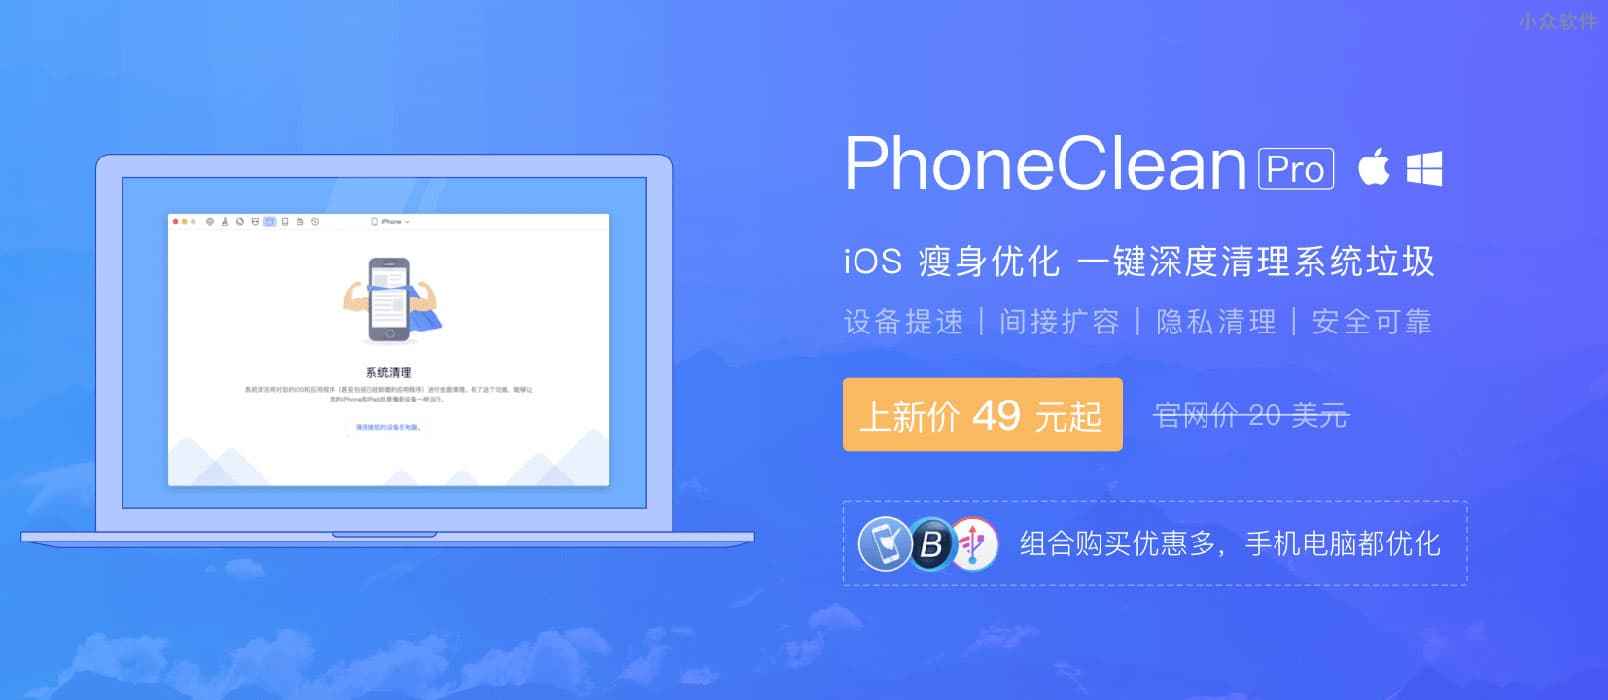 PhoneClean - iOS 瘦身优化神器，为 iPhone、iPad 提速扩容 1